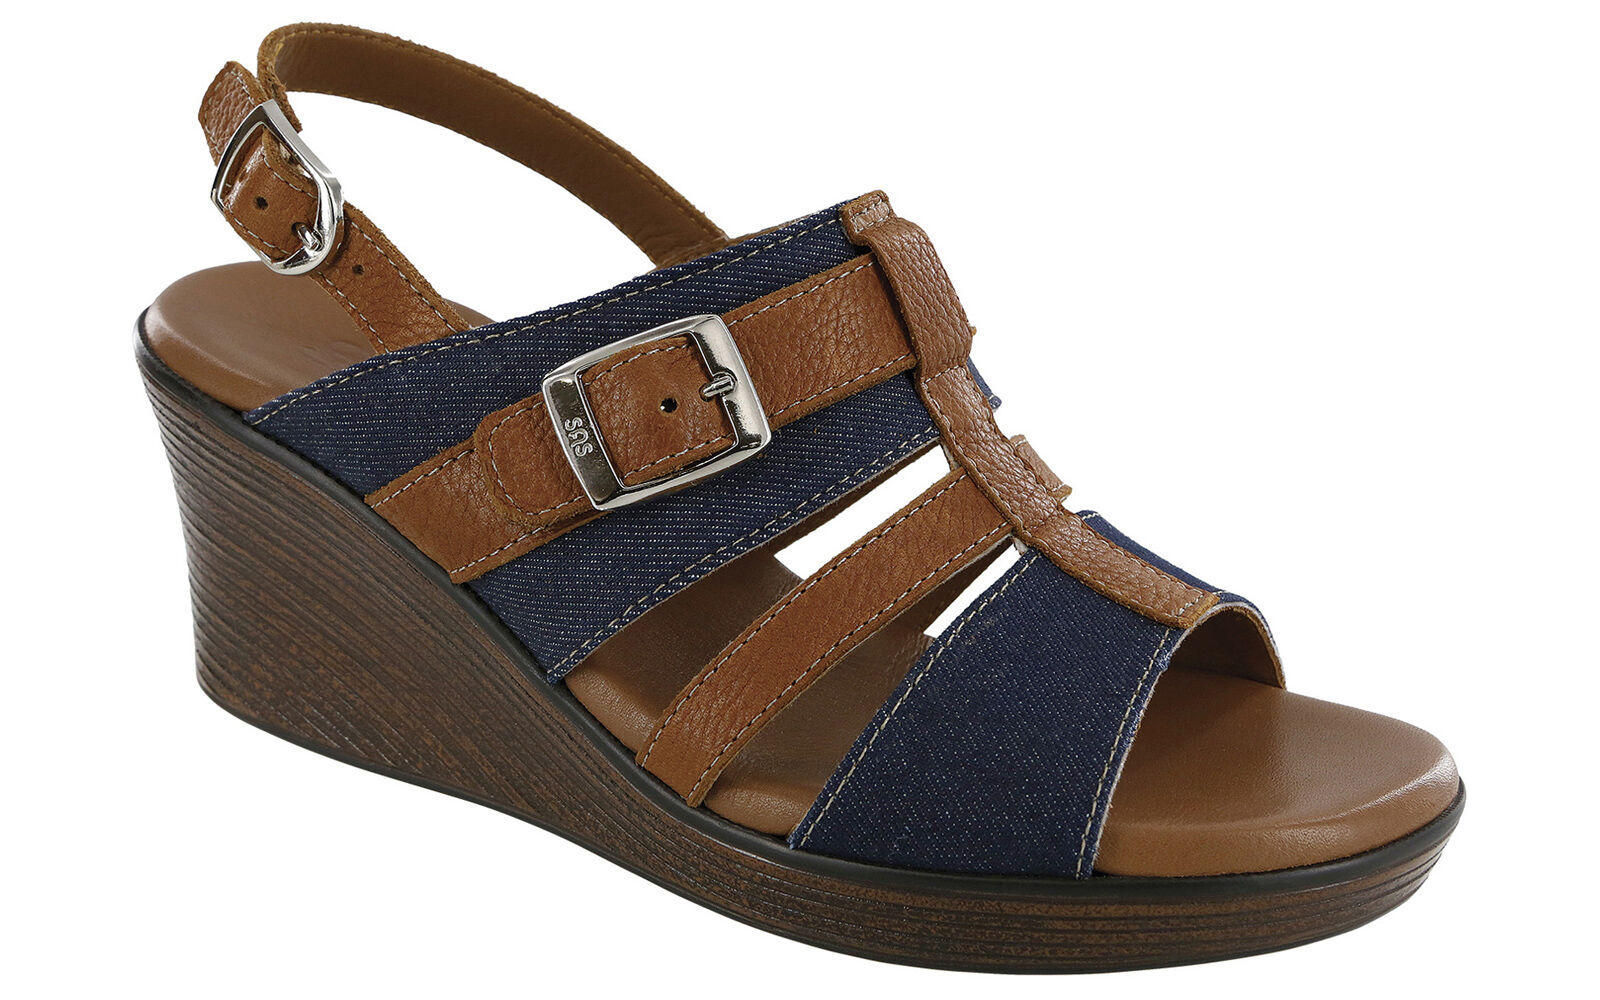 Buy > t strap wedge sandal > in stock